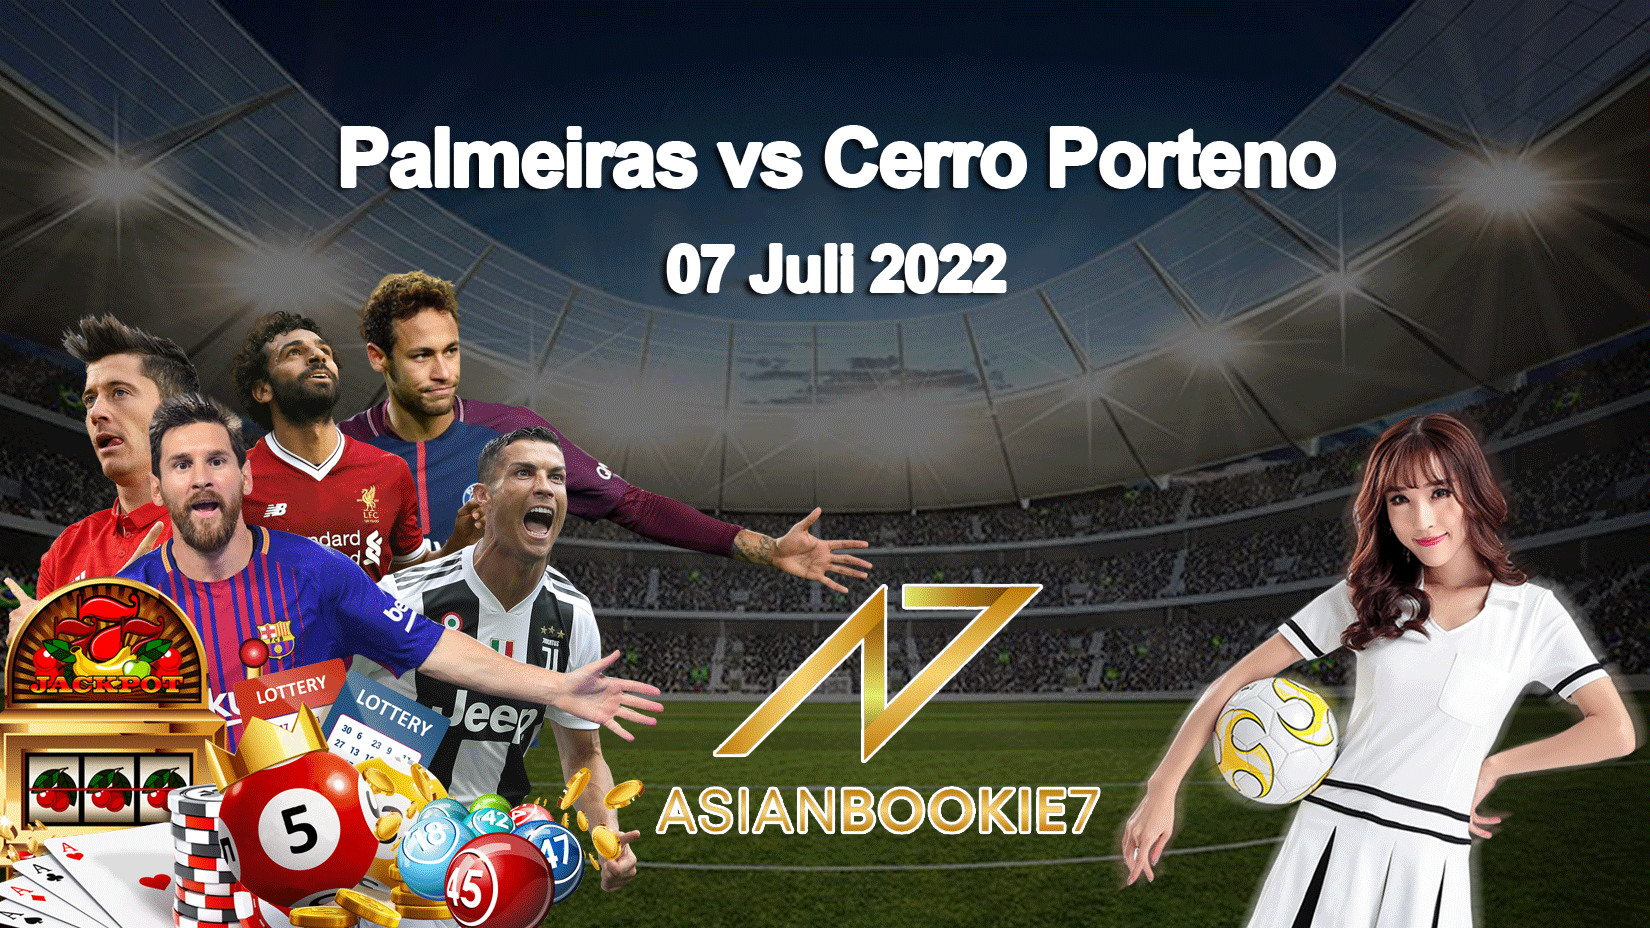 Prediksi Palmeiras vs Cerro Porteno 07 Juli 2022